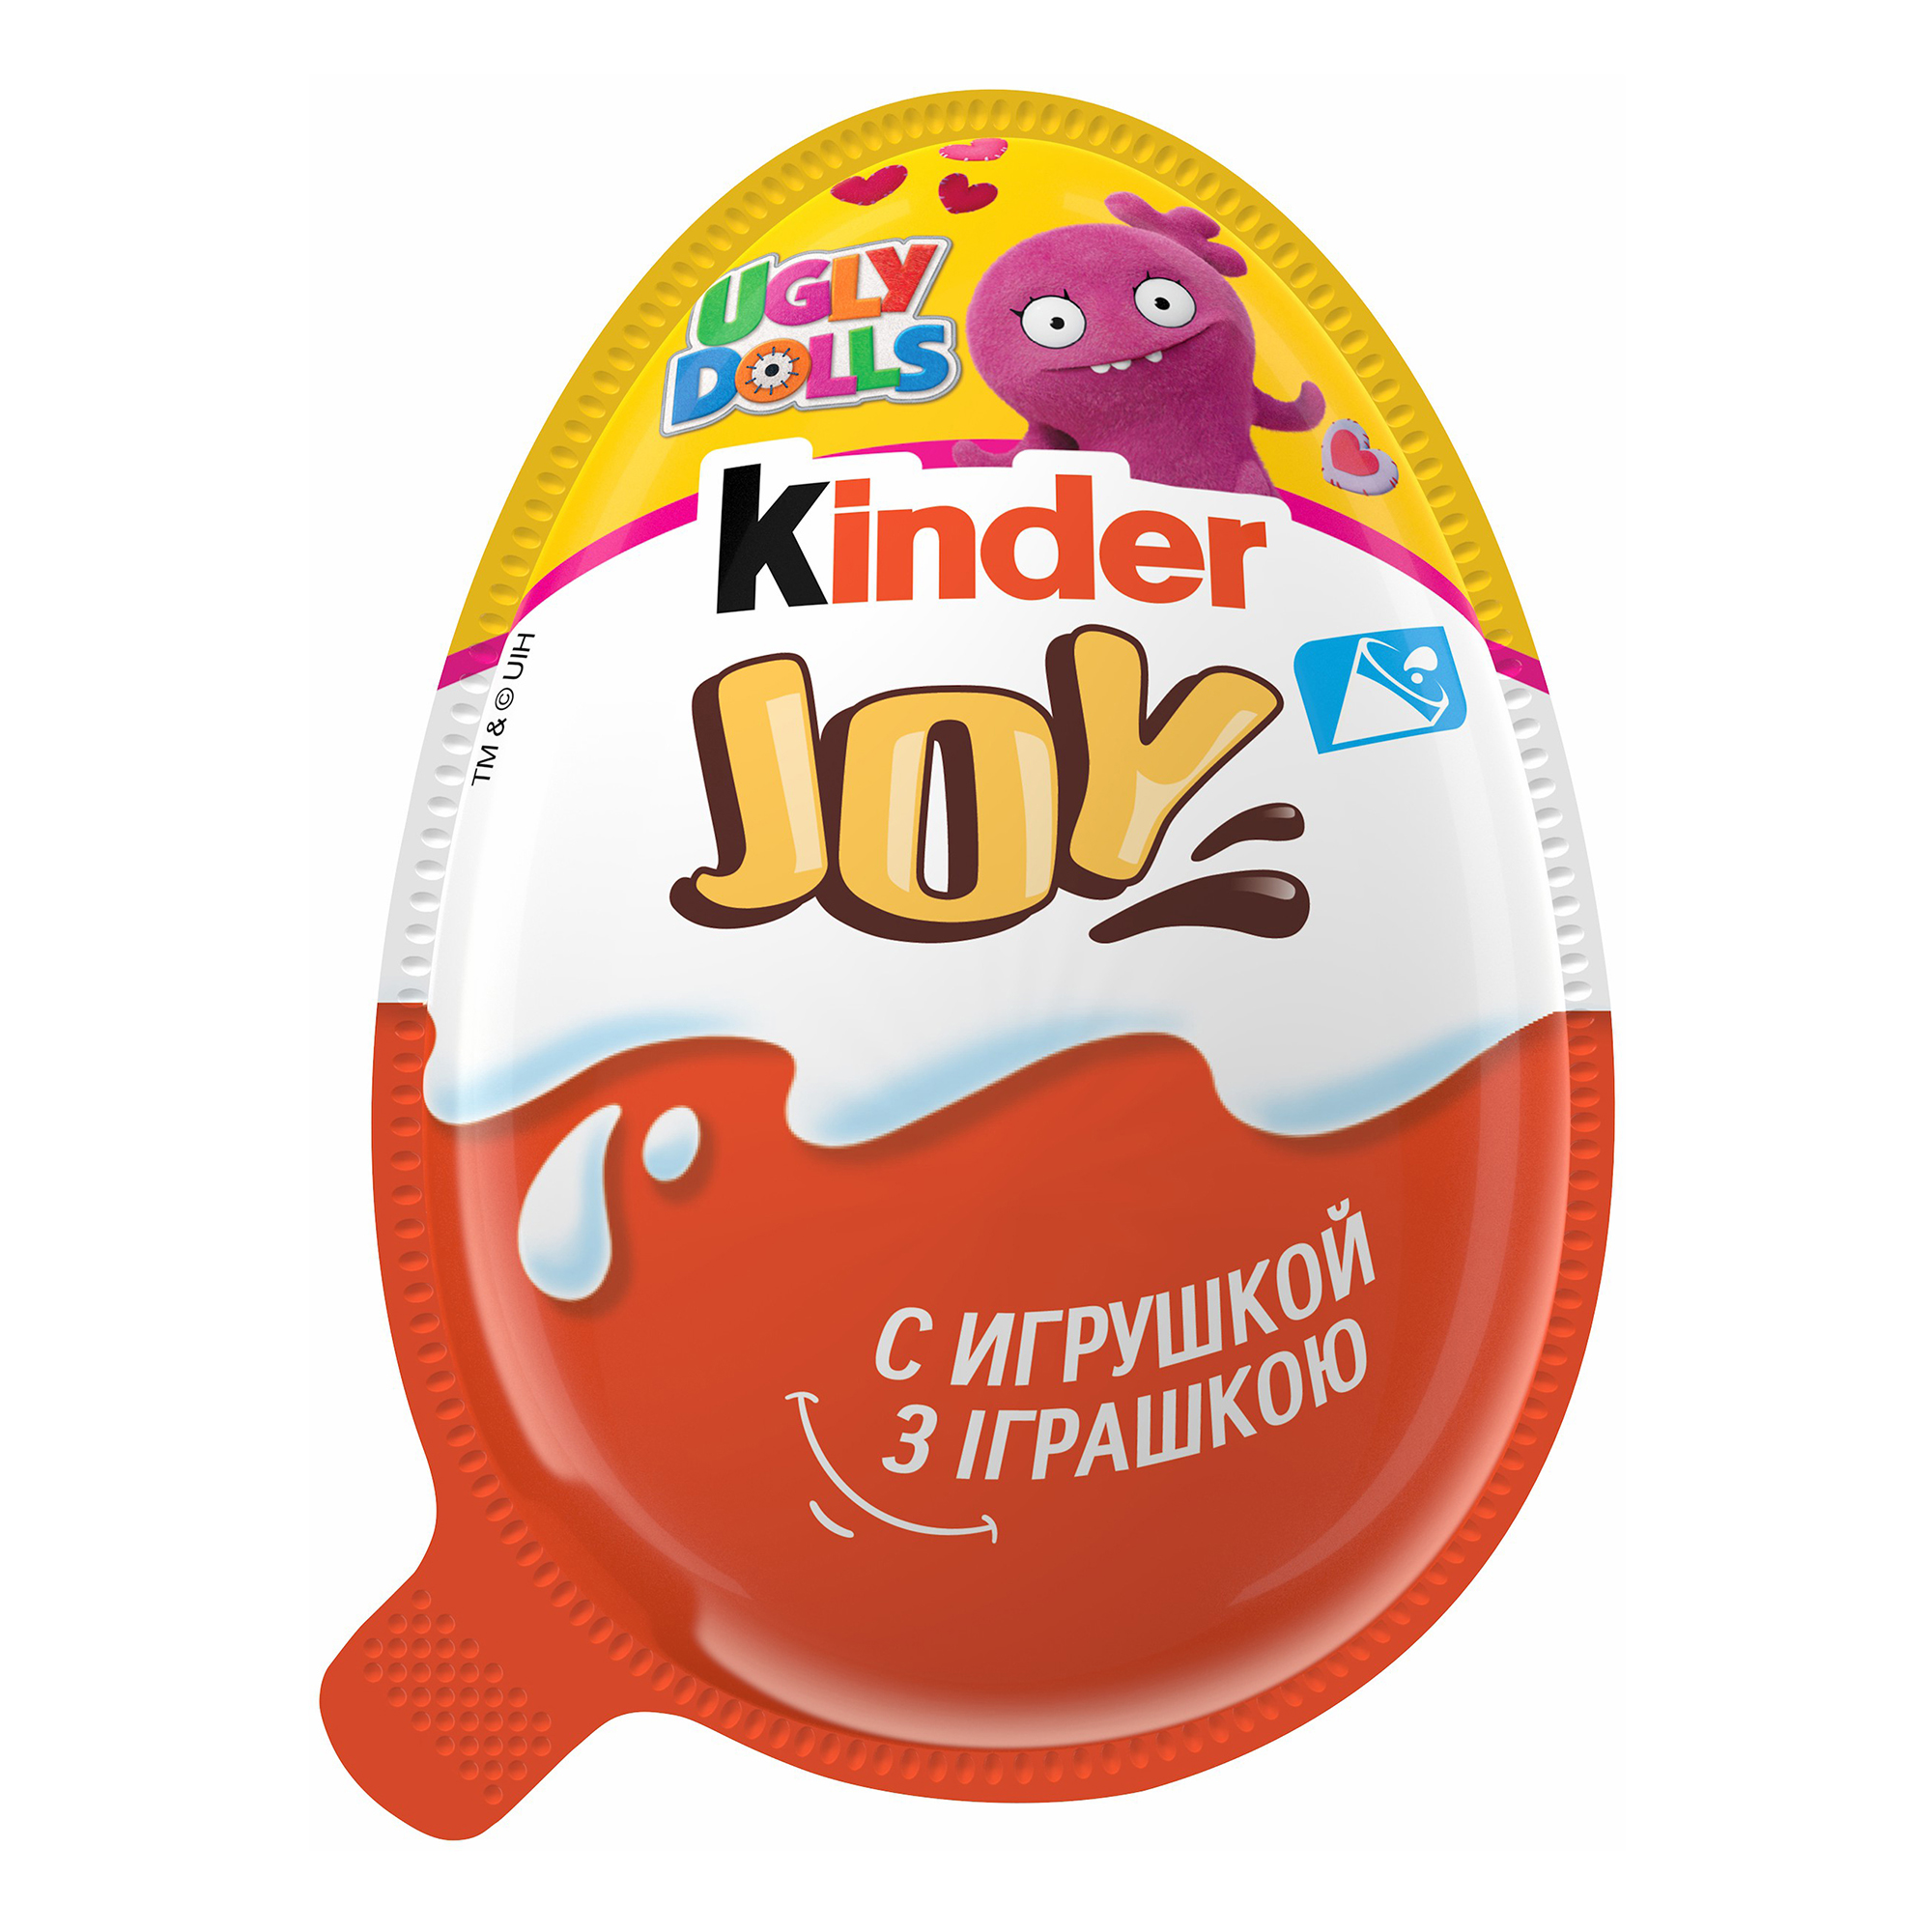 Киндер джой купить. Яйцо шоколадное kinder Джой 20г. Яйцо kinder Joy шоколадное, 20 г. Kinder Joy (Киндер Джой) для мальчиков. Uglydolls Киндер Джой.